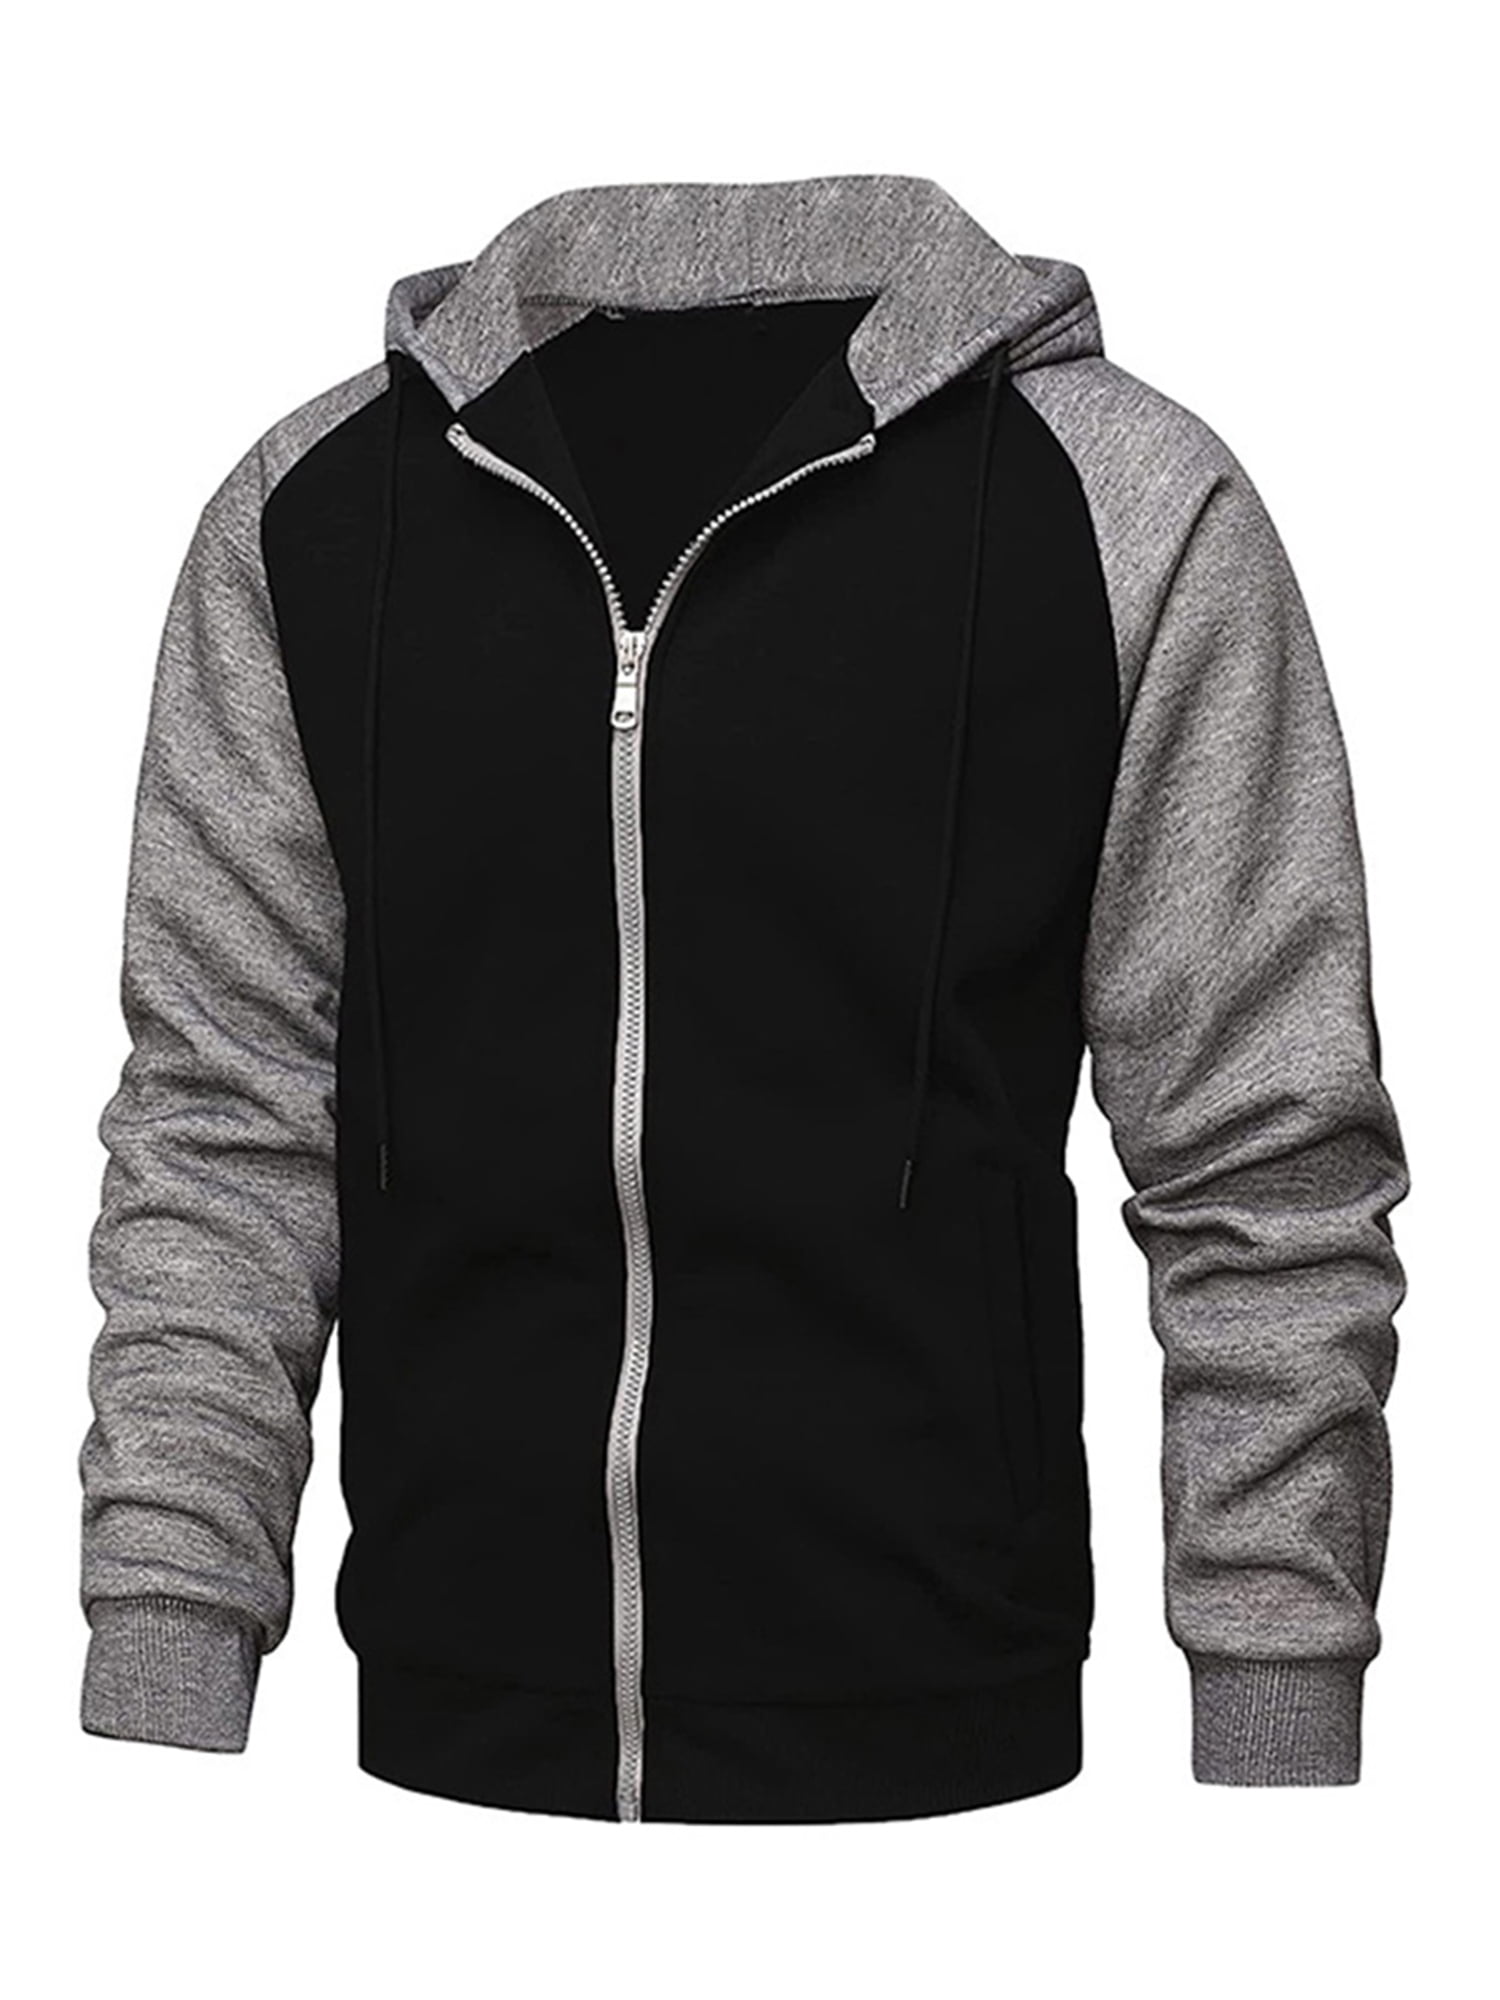 Thaisu Hoodies for Men Fleece Lined Sweatshirt Heavyweight Winter Full Zip  Up Jacket Coat Outerwear